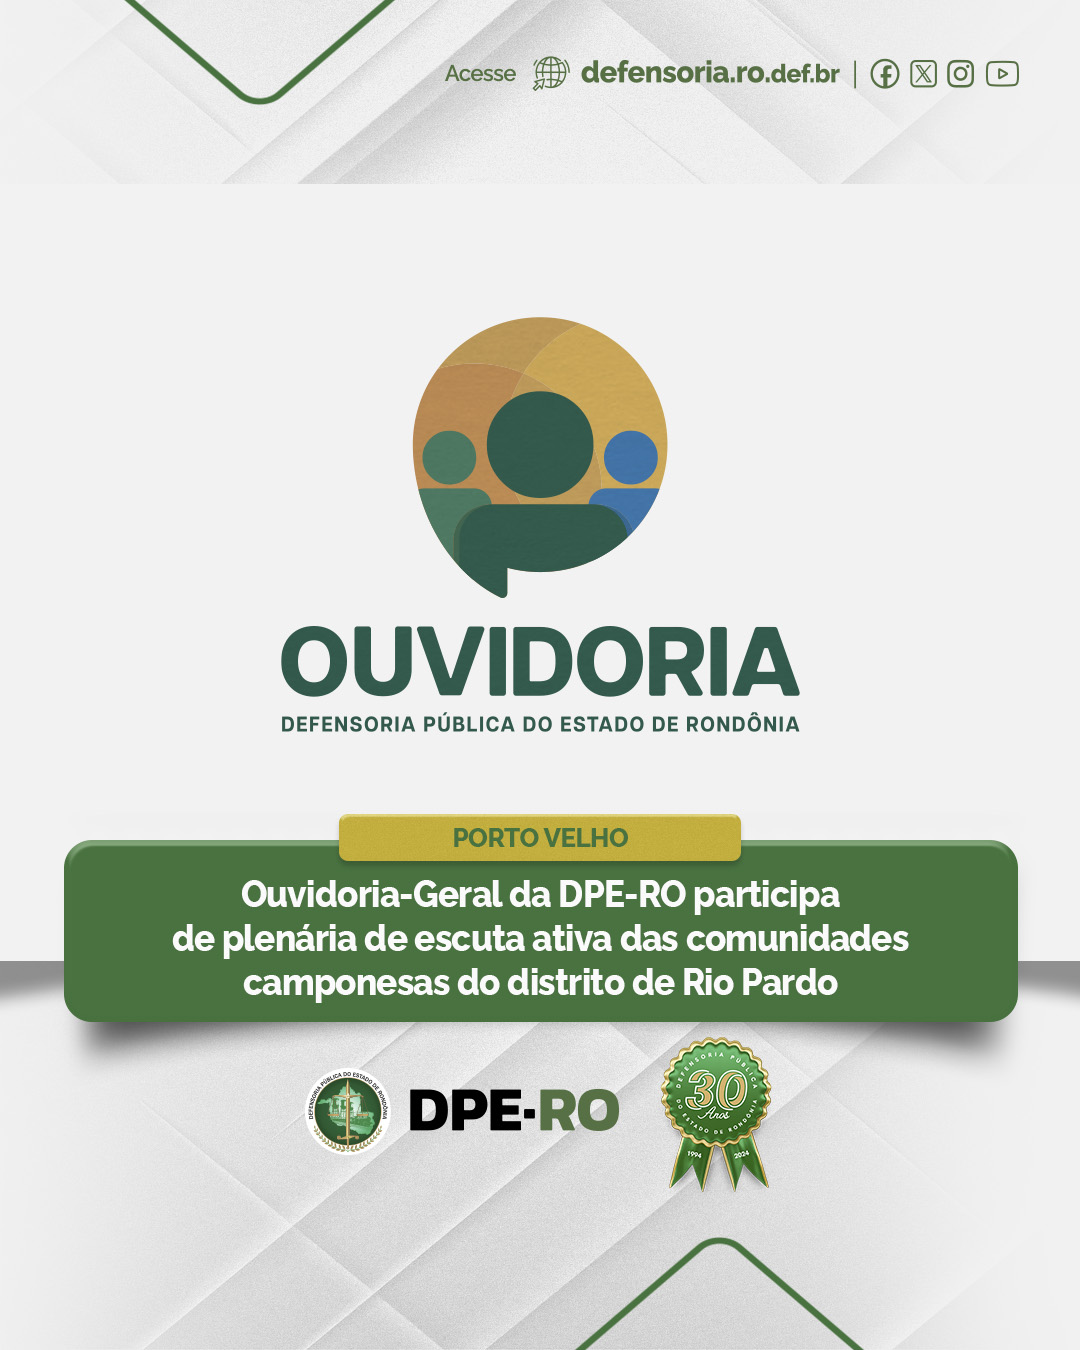 Porto Velho: Ouvidoria-Geral da DPE-RO participa de plenária de escuta ativa das comunidades camponesas do distrito de Rio Pardo